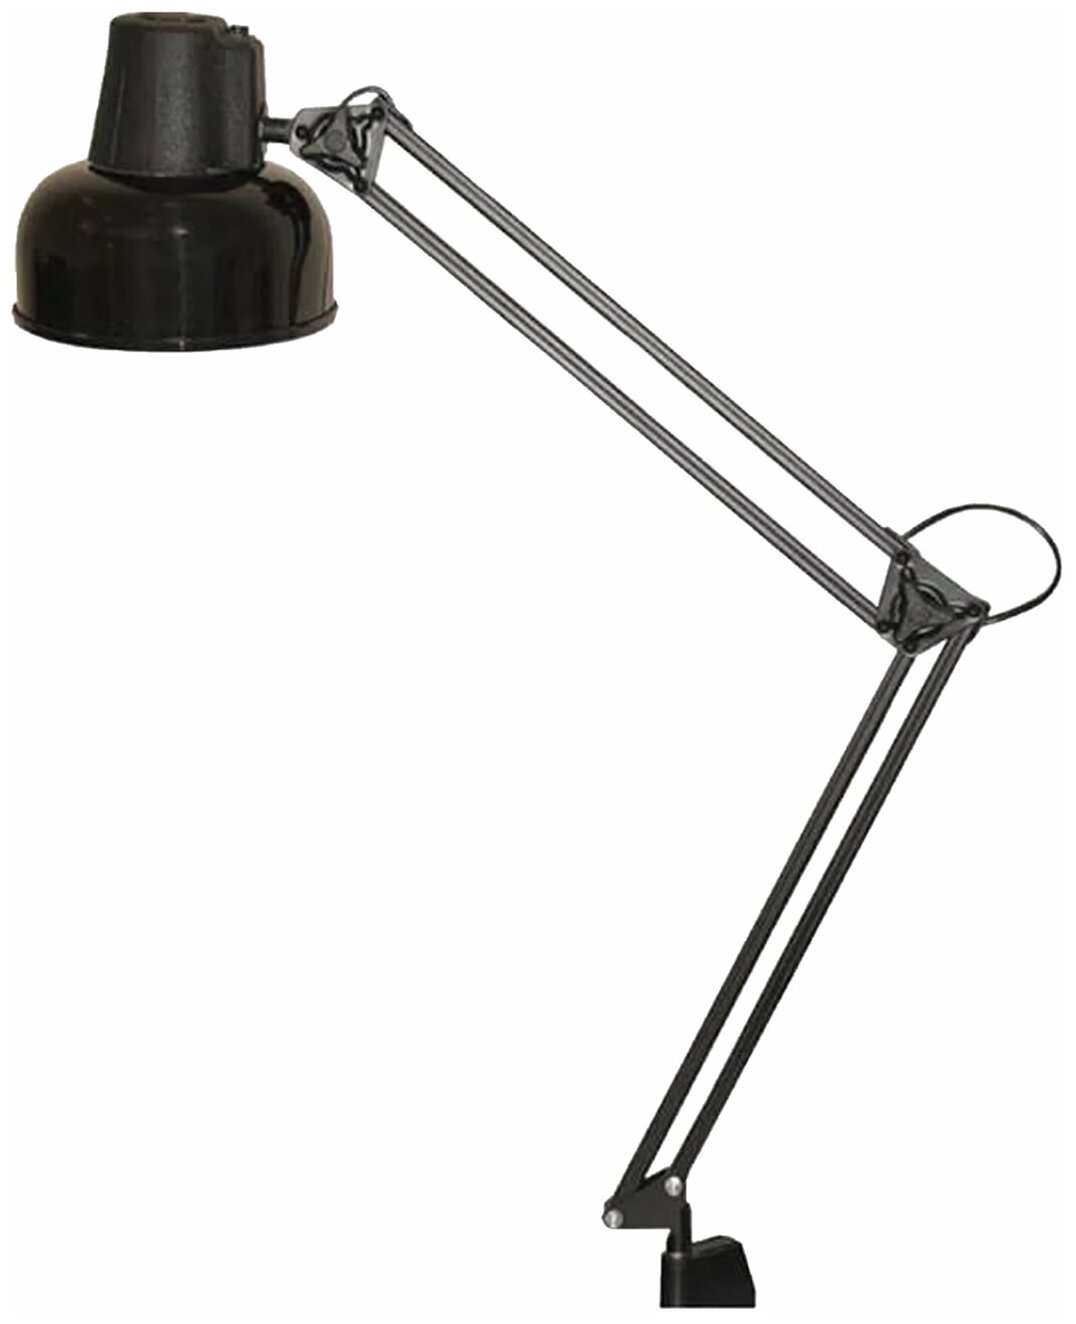 Светильник настольный Бета, на струбцине, лампа накаливания/люминесцентная/светодиодная, до 60 Вт, черный, высота 70 см, Е27